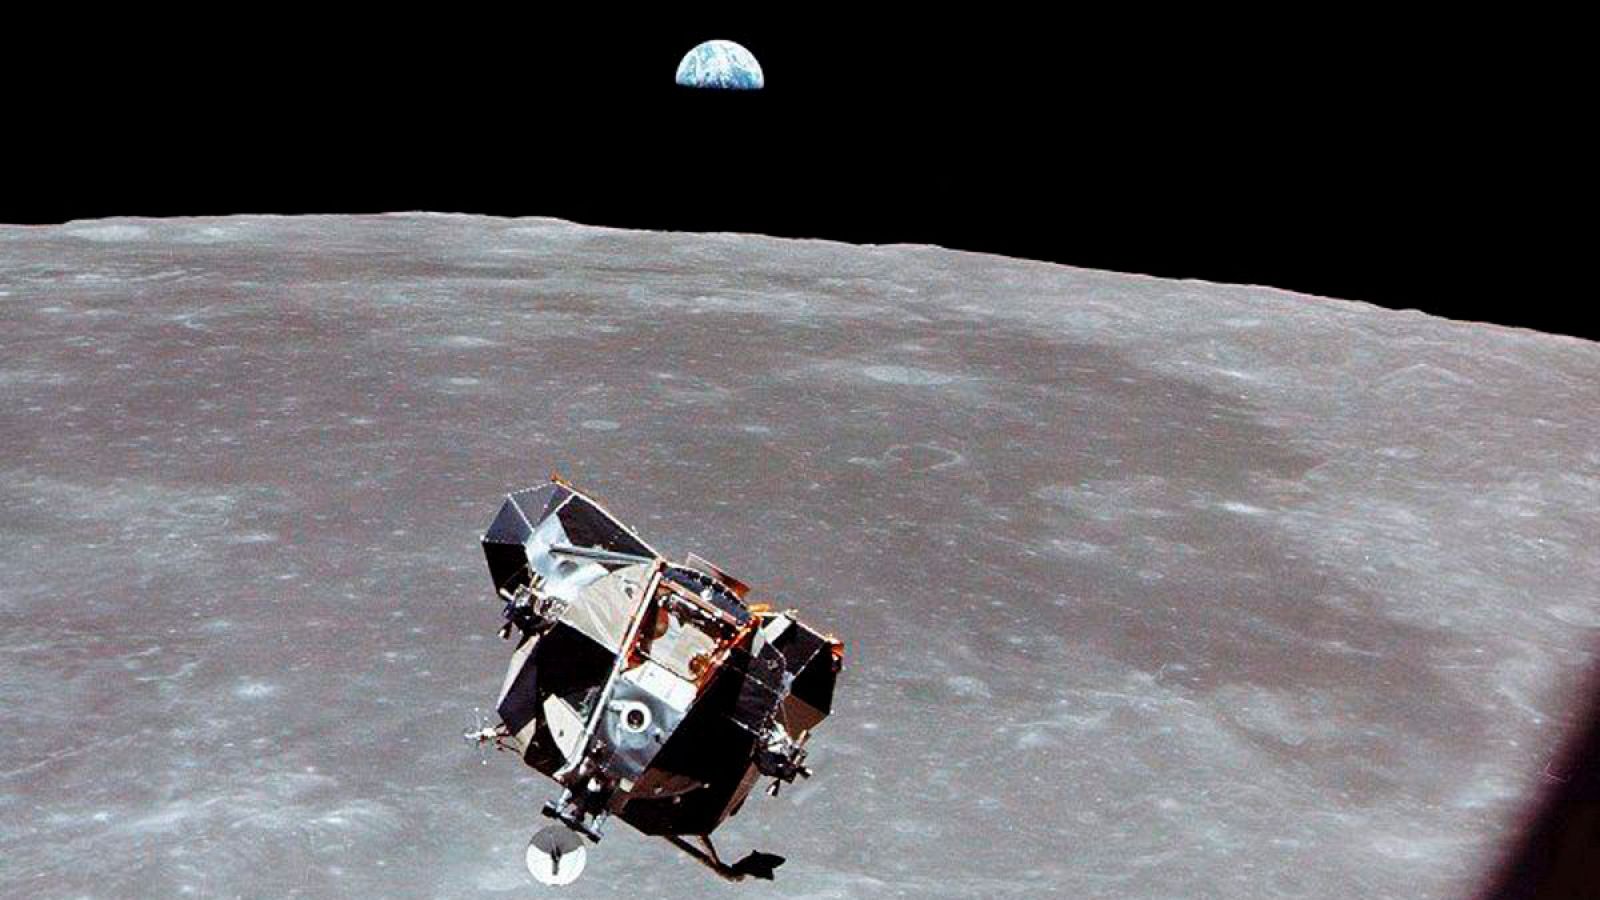 Imagen cedida por la NASA tomada el 19 de julio de 1969 que muestra a la la cápsula "Apolo XI", con la luna al fondo.